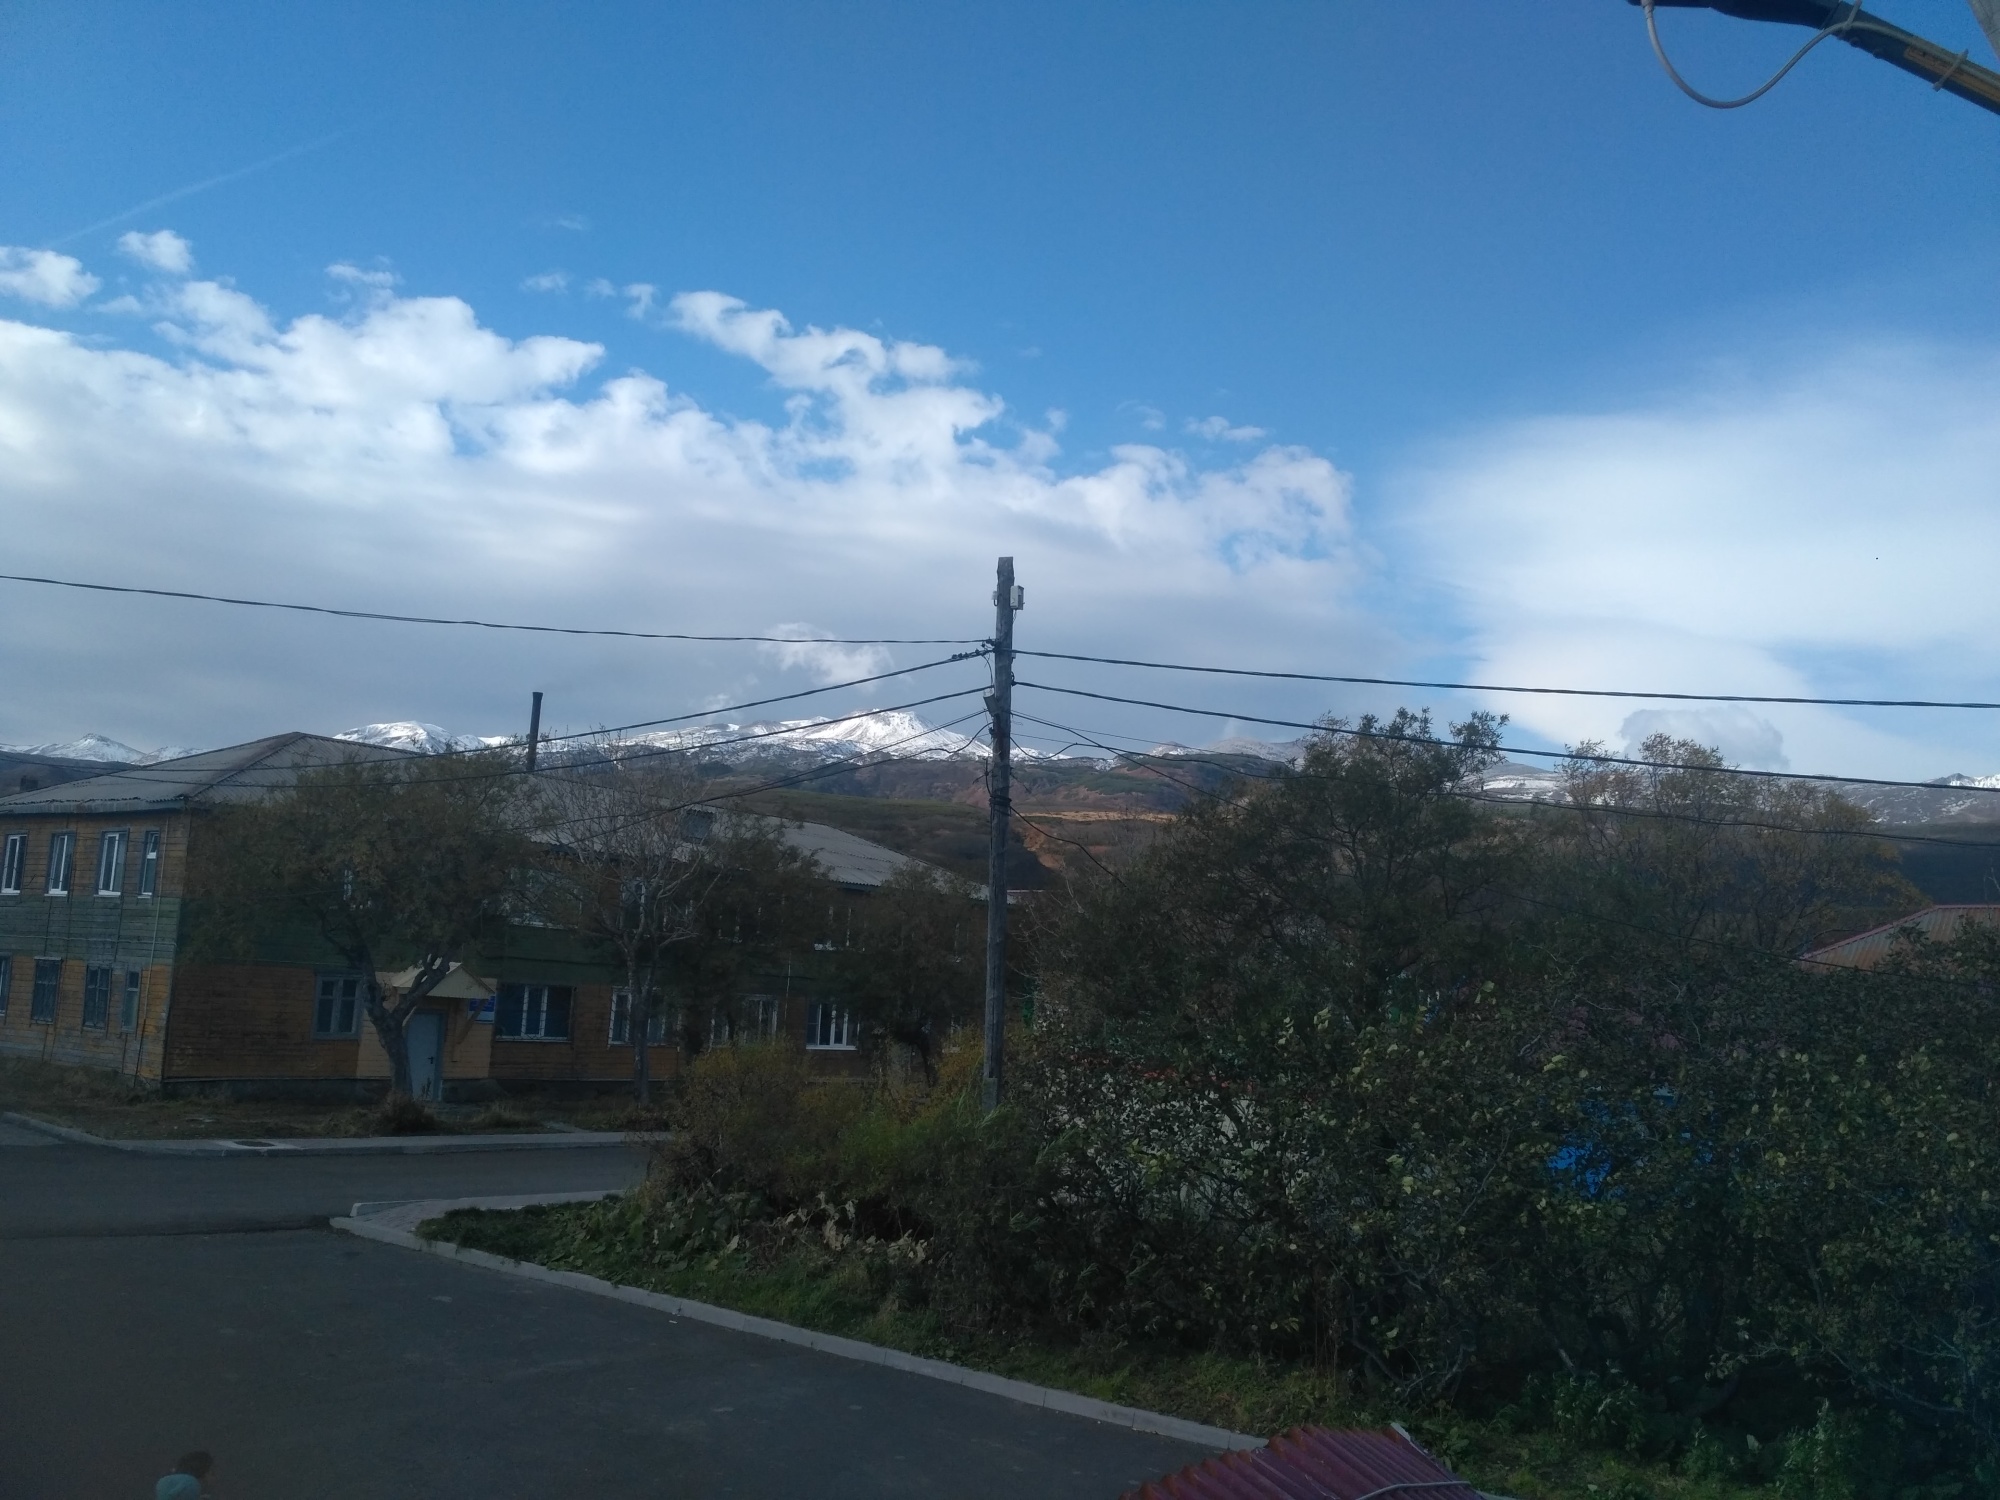 Вулкан Эбеко выбросил пепел на 2 км